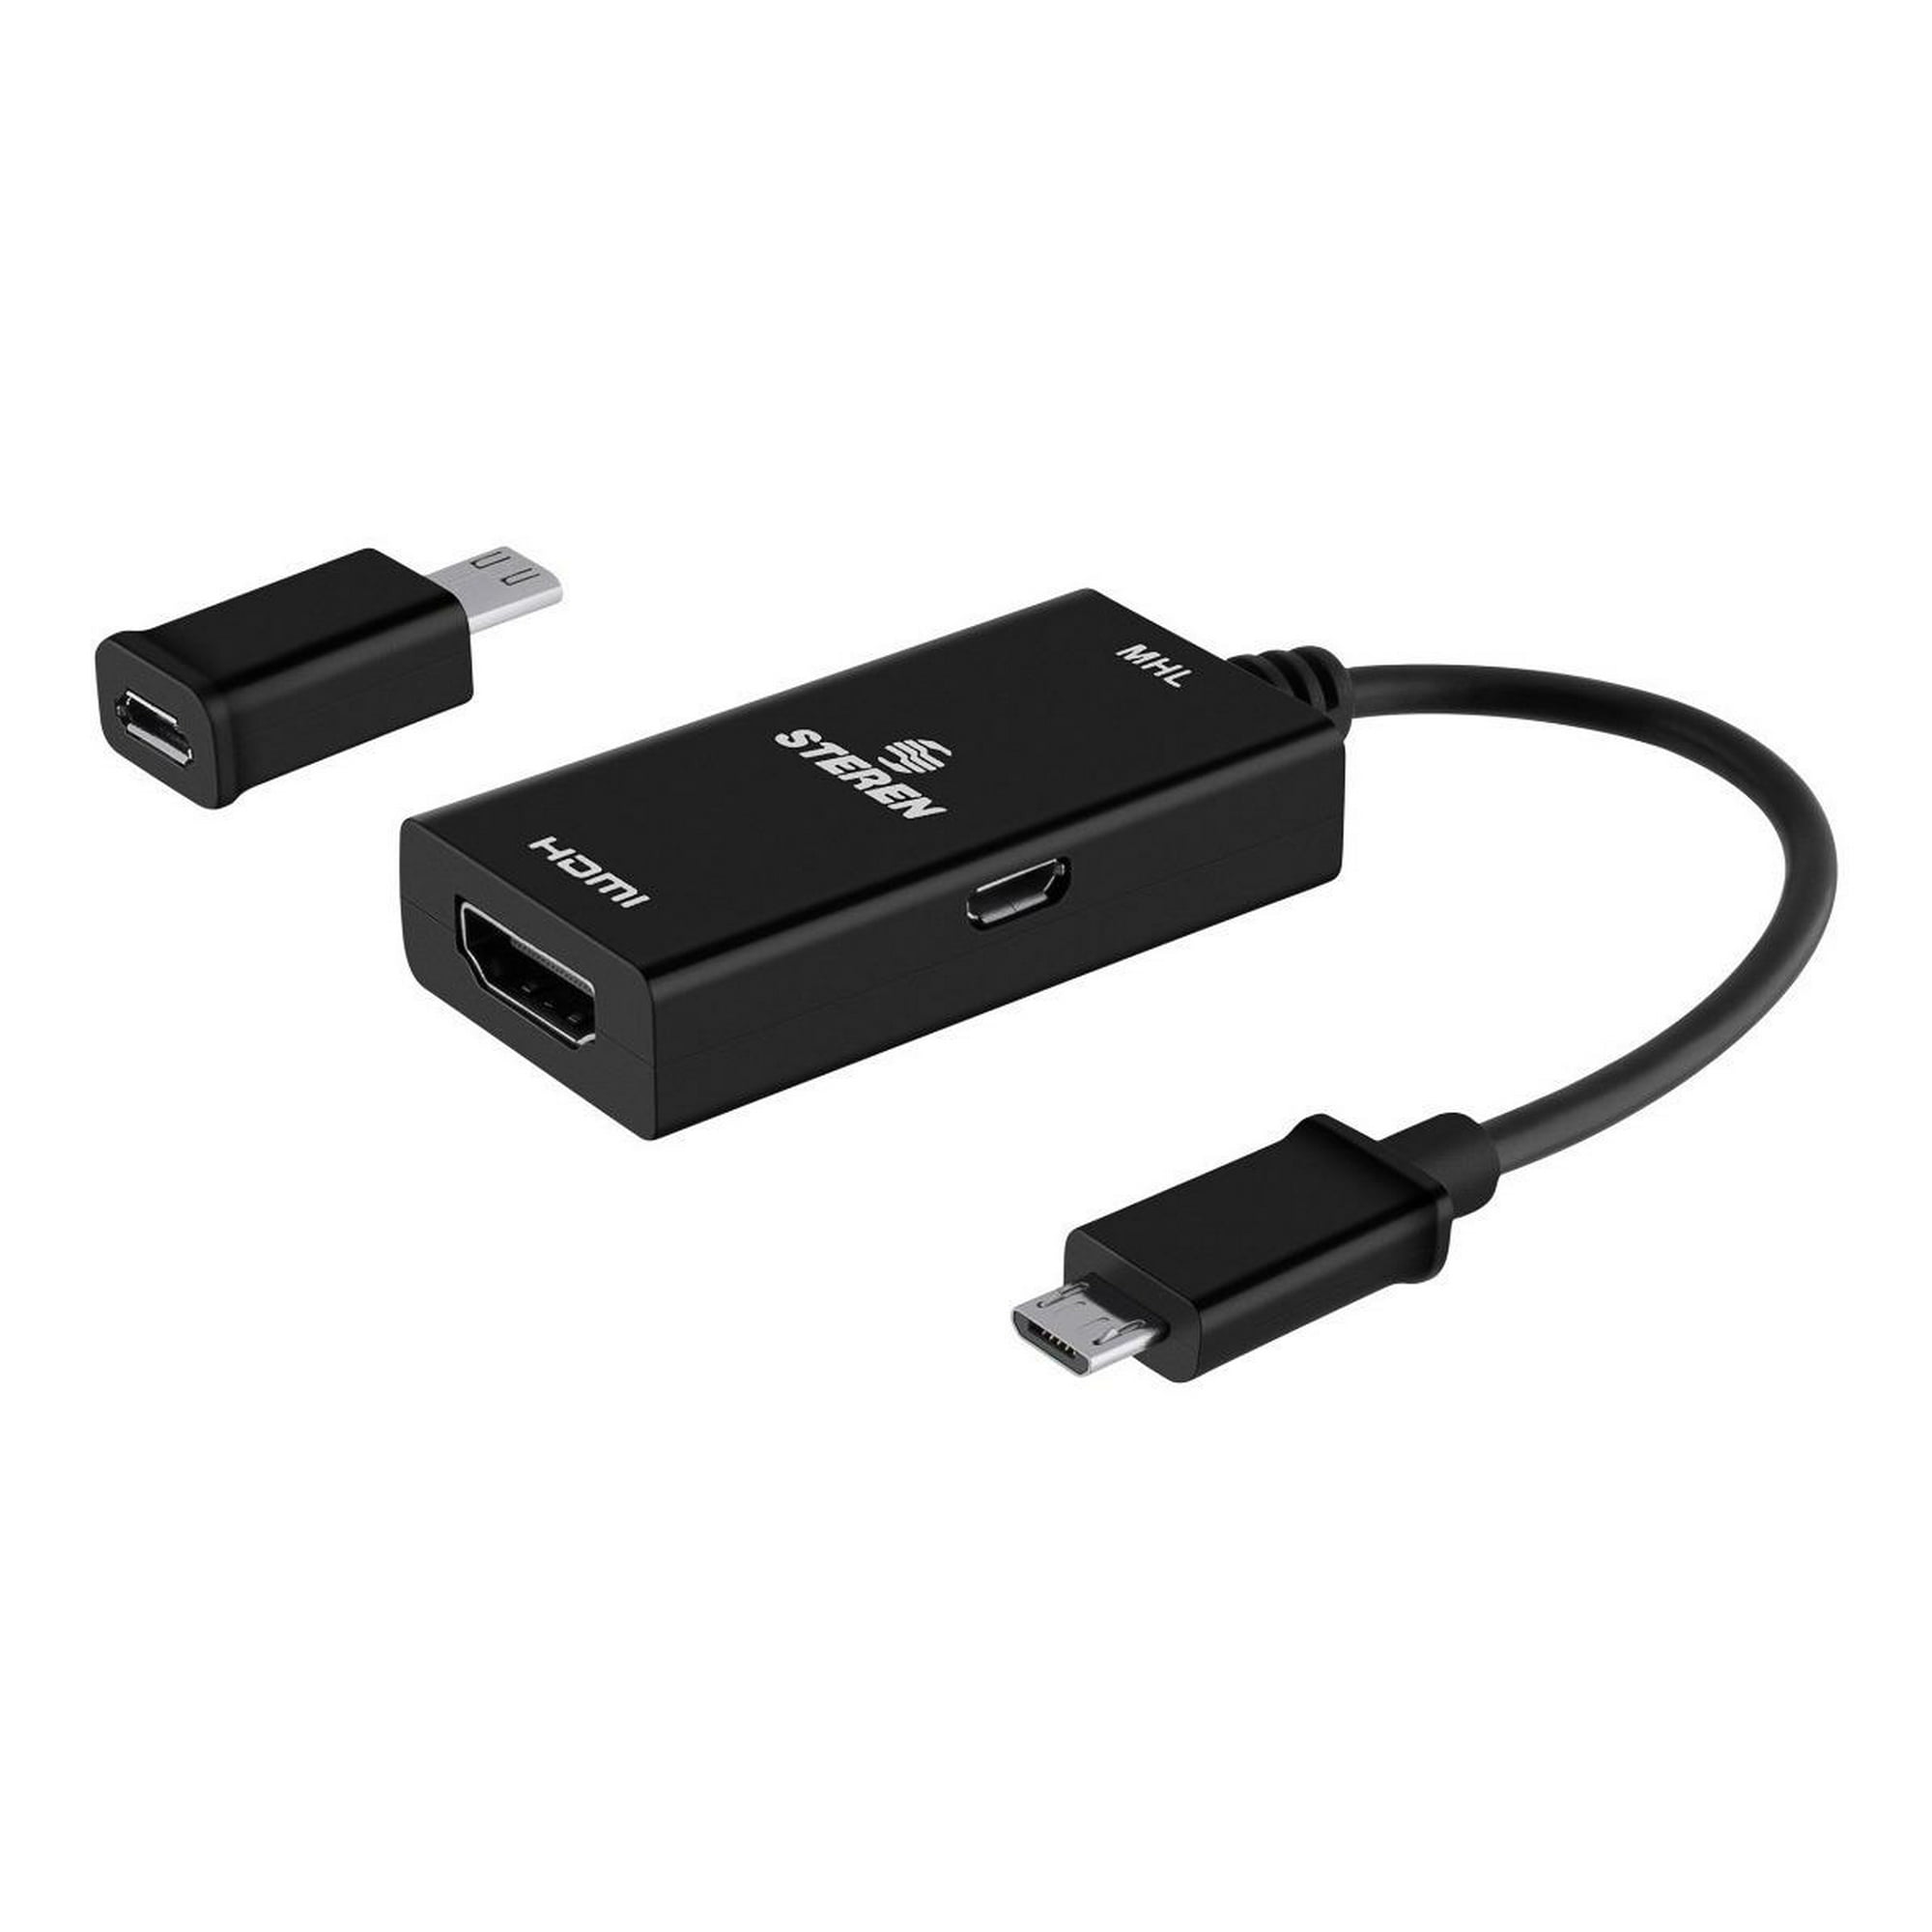 CABLE ADAPTADOR DE USB 3.0 HEMBRA A HDMI MACHO MHL PARA CELULARES